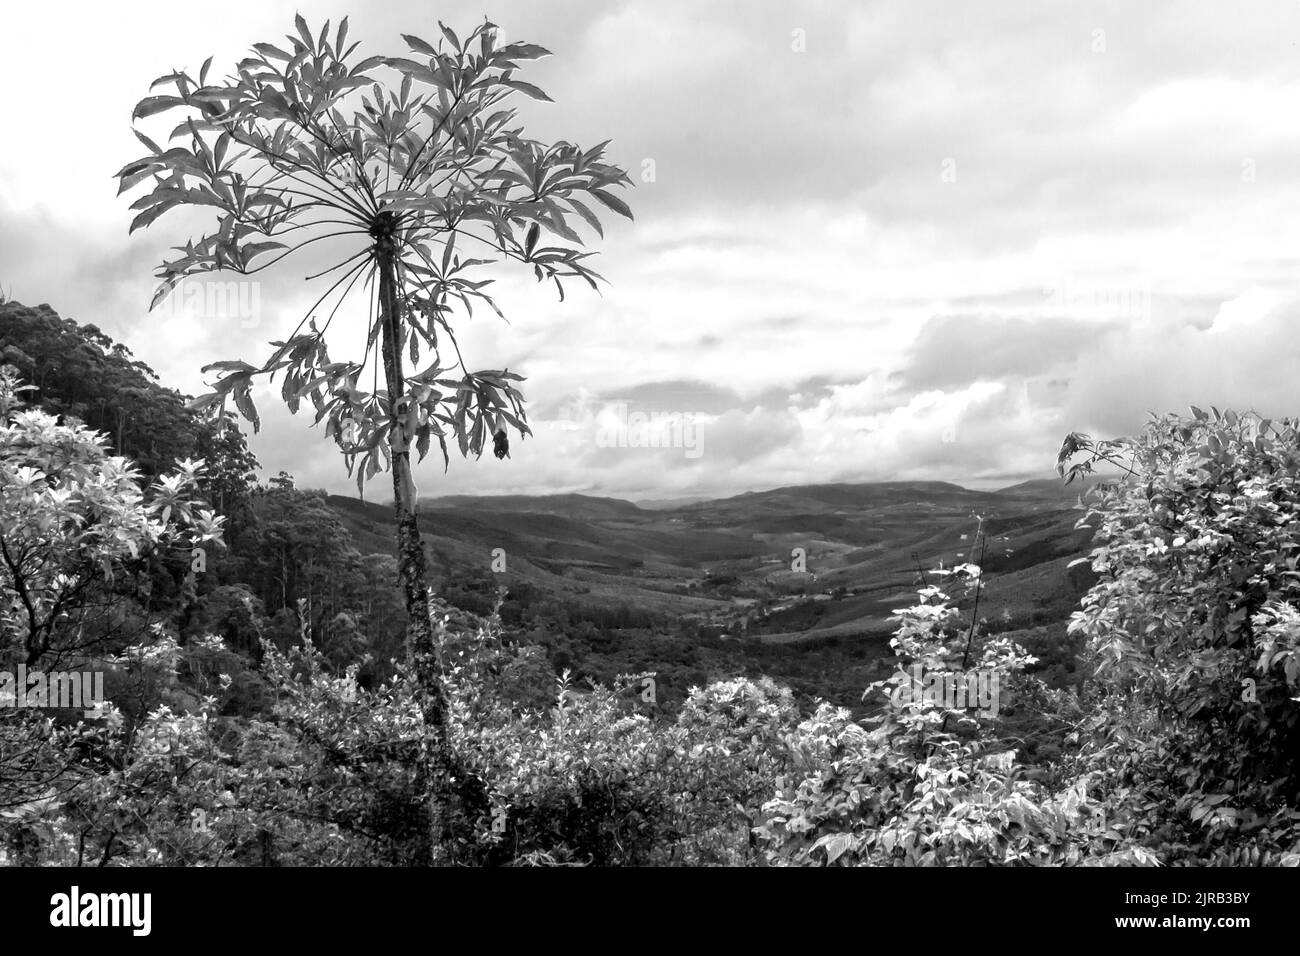 Un unico albero di cavolo grigio che si insaporisce, in bianco e nero, con una valle isolata sullo sfondo, in una giornata colma a Magoebaskloof, Sudafrica. Foto Stock